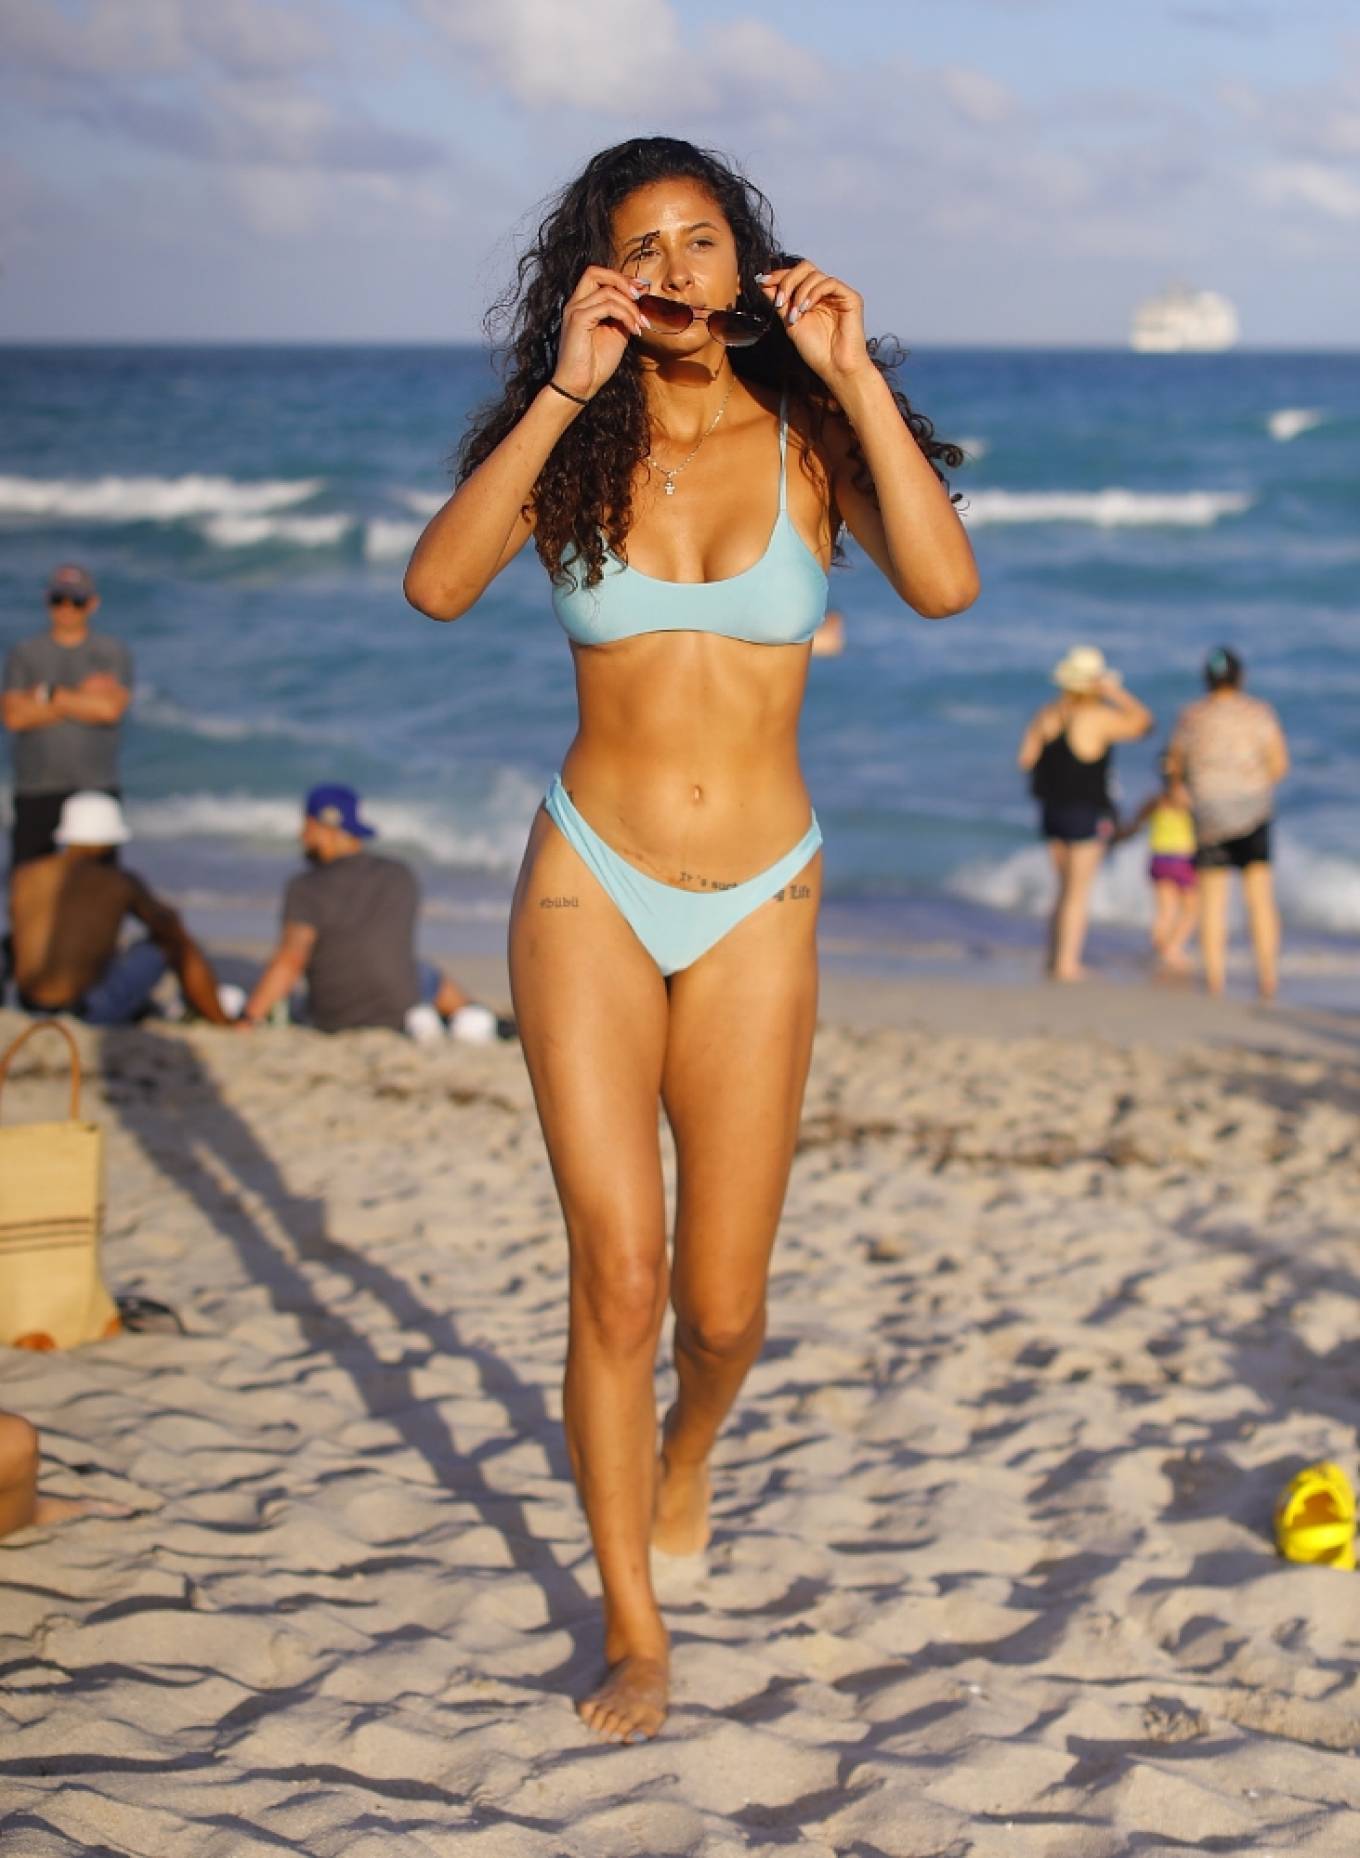 Rebecca Scott - In a bikini on the beach during Spring Break in Miami.